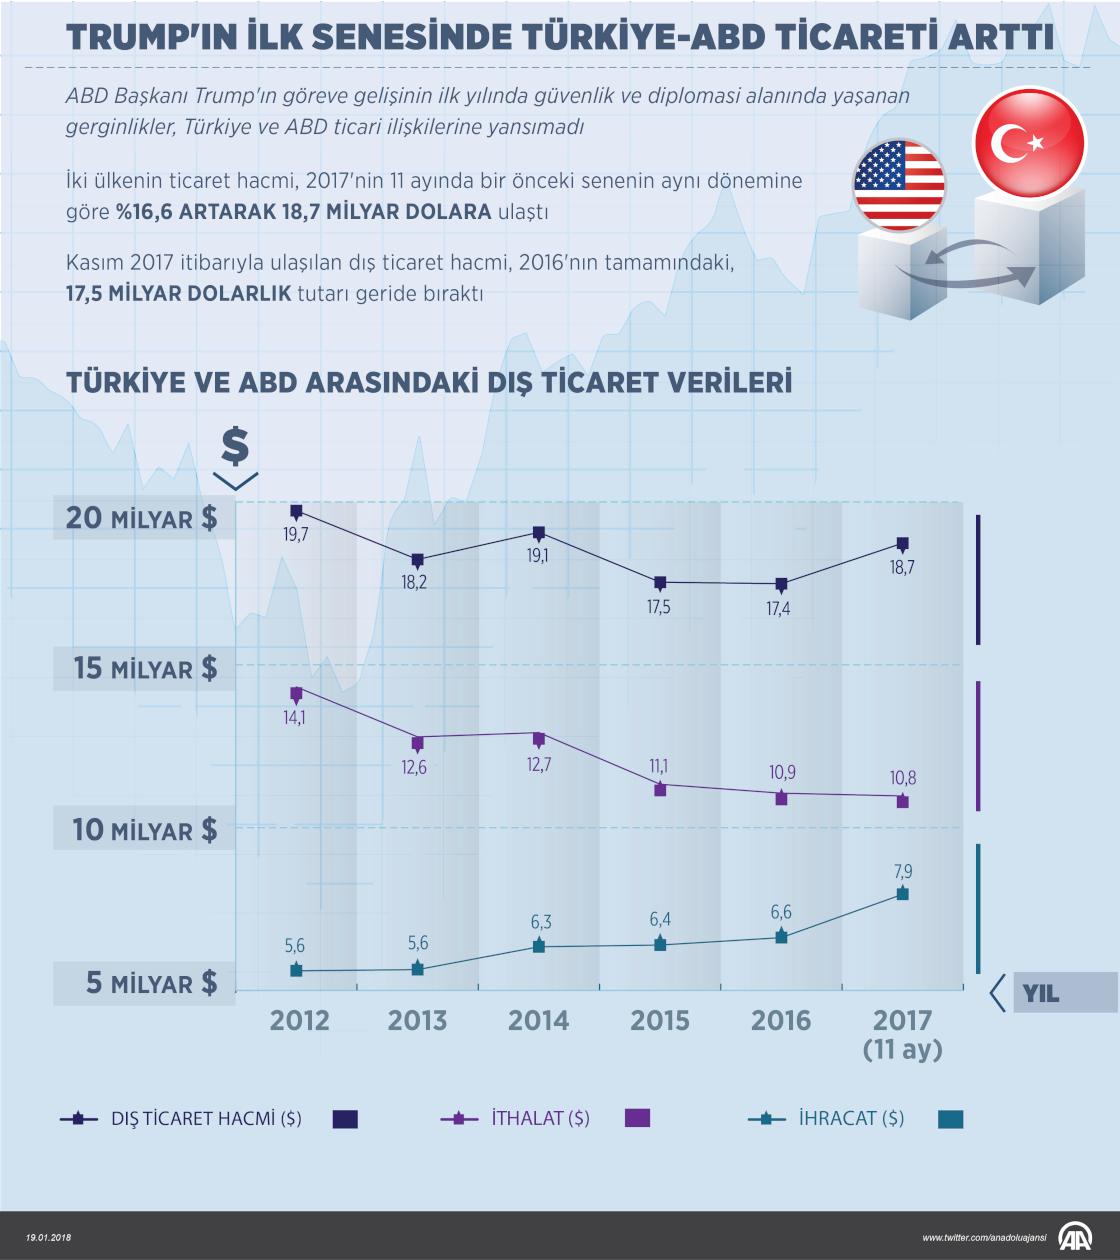 Trump'ın ilk senesinde Türkiye-ABD ticareti arttı